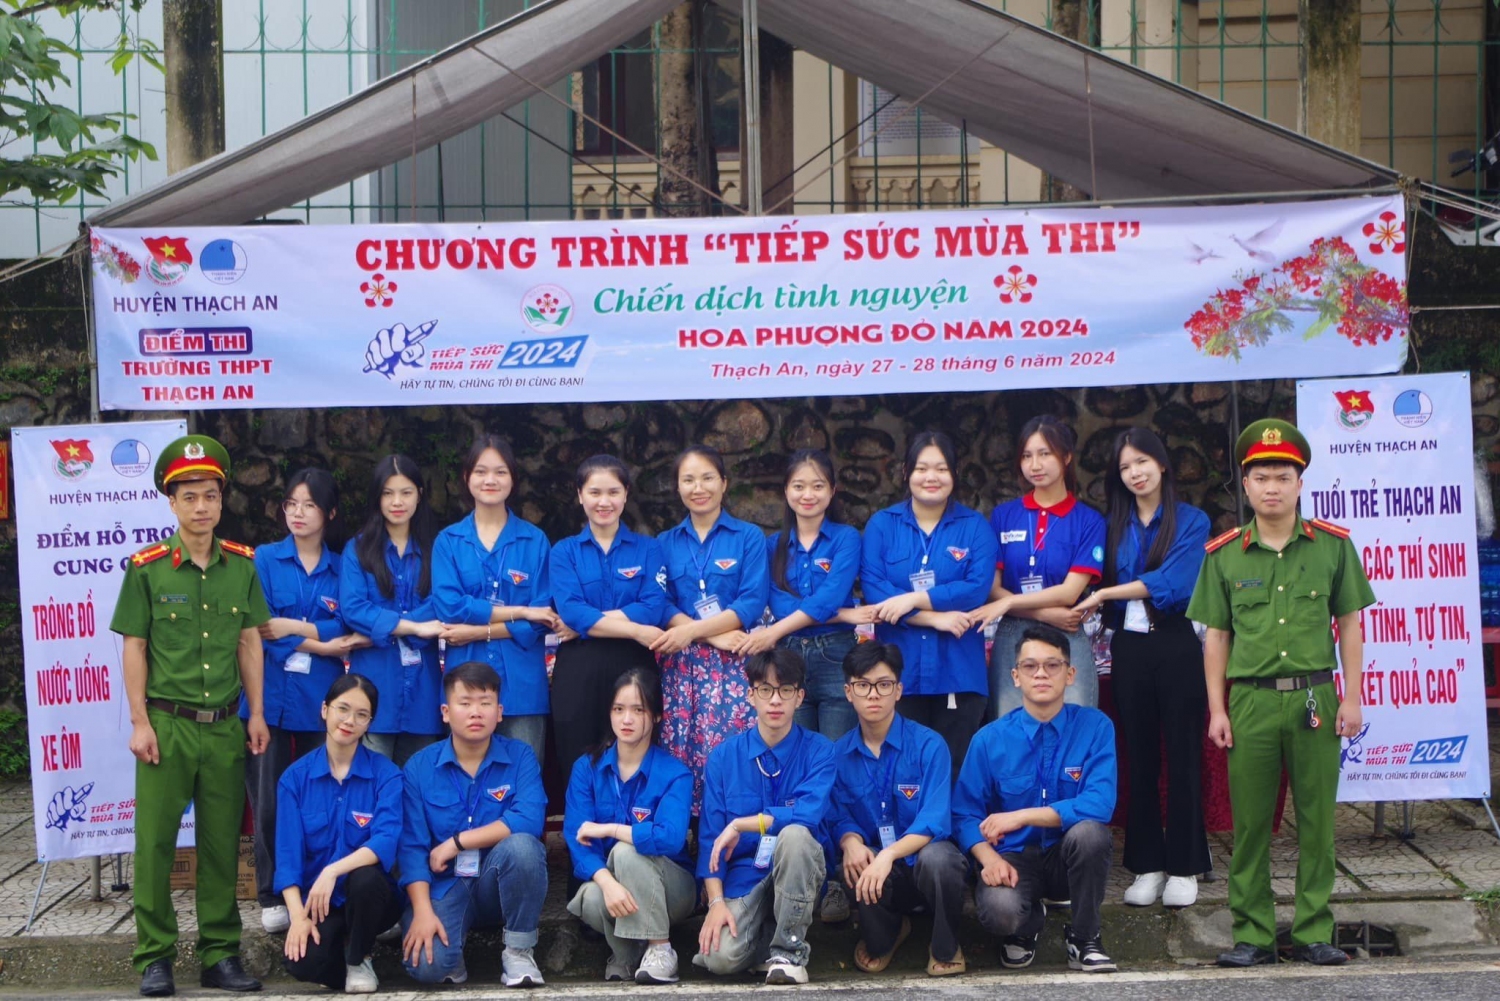 Đội hình "Tiếp sức mùa thi" huyện Thạch An.